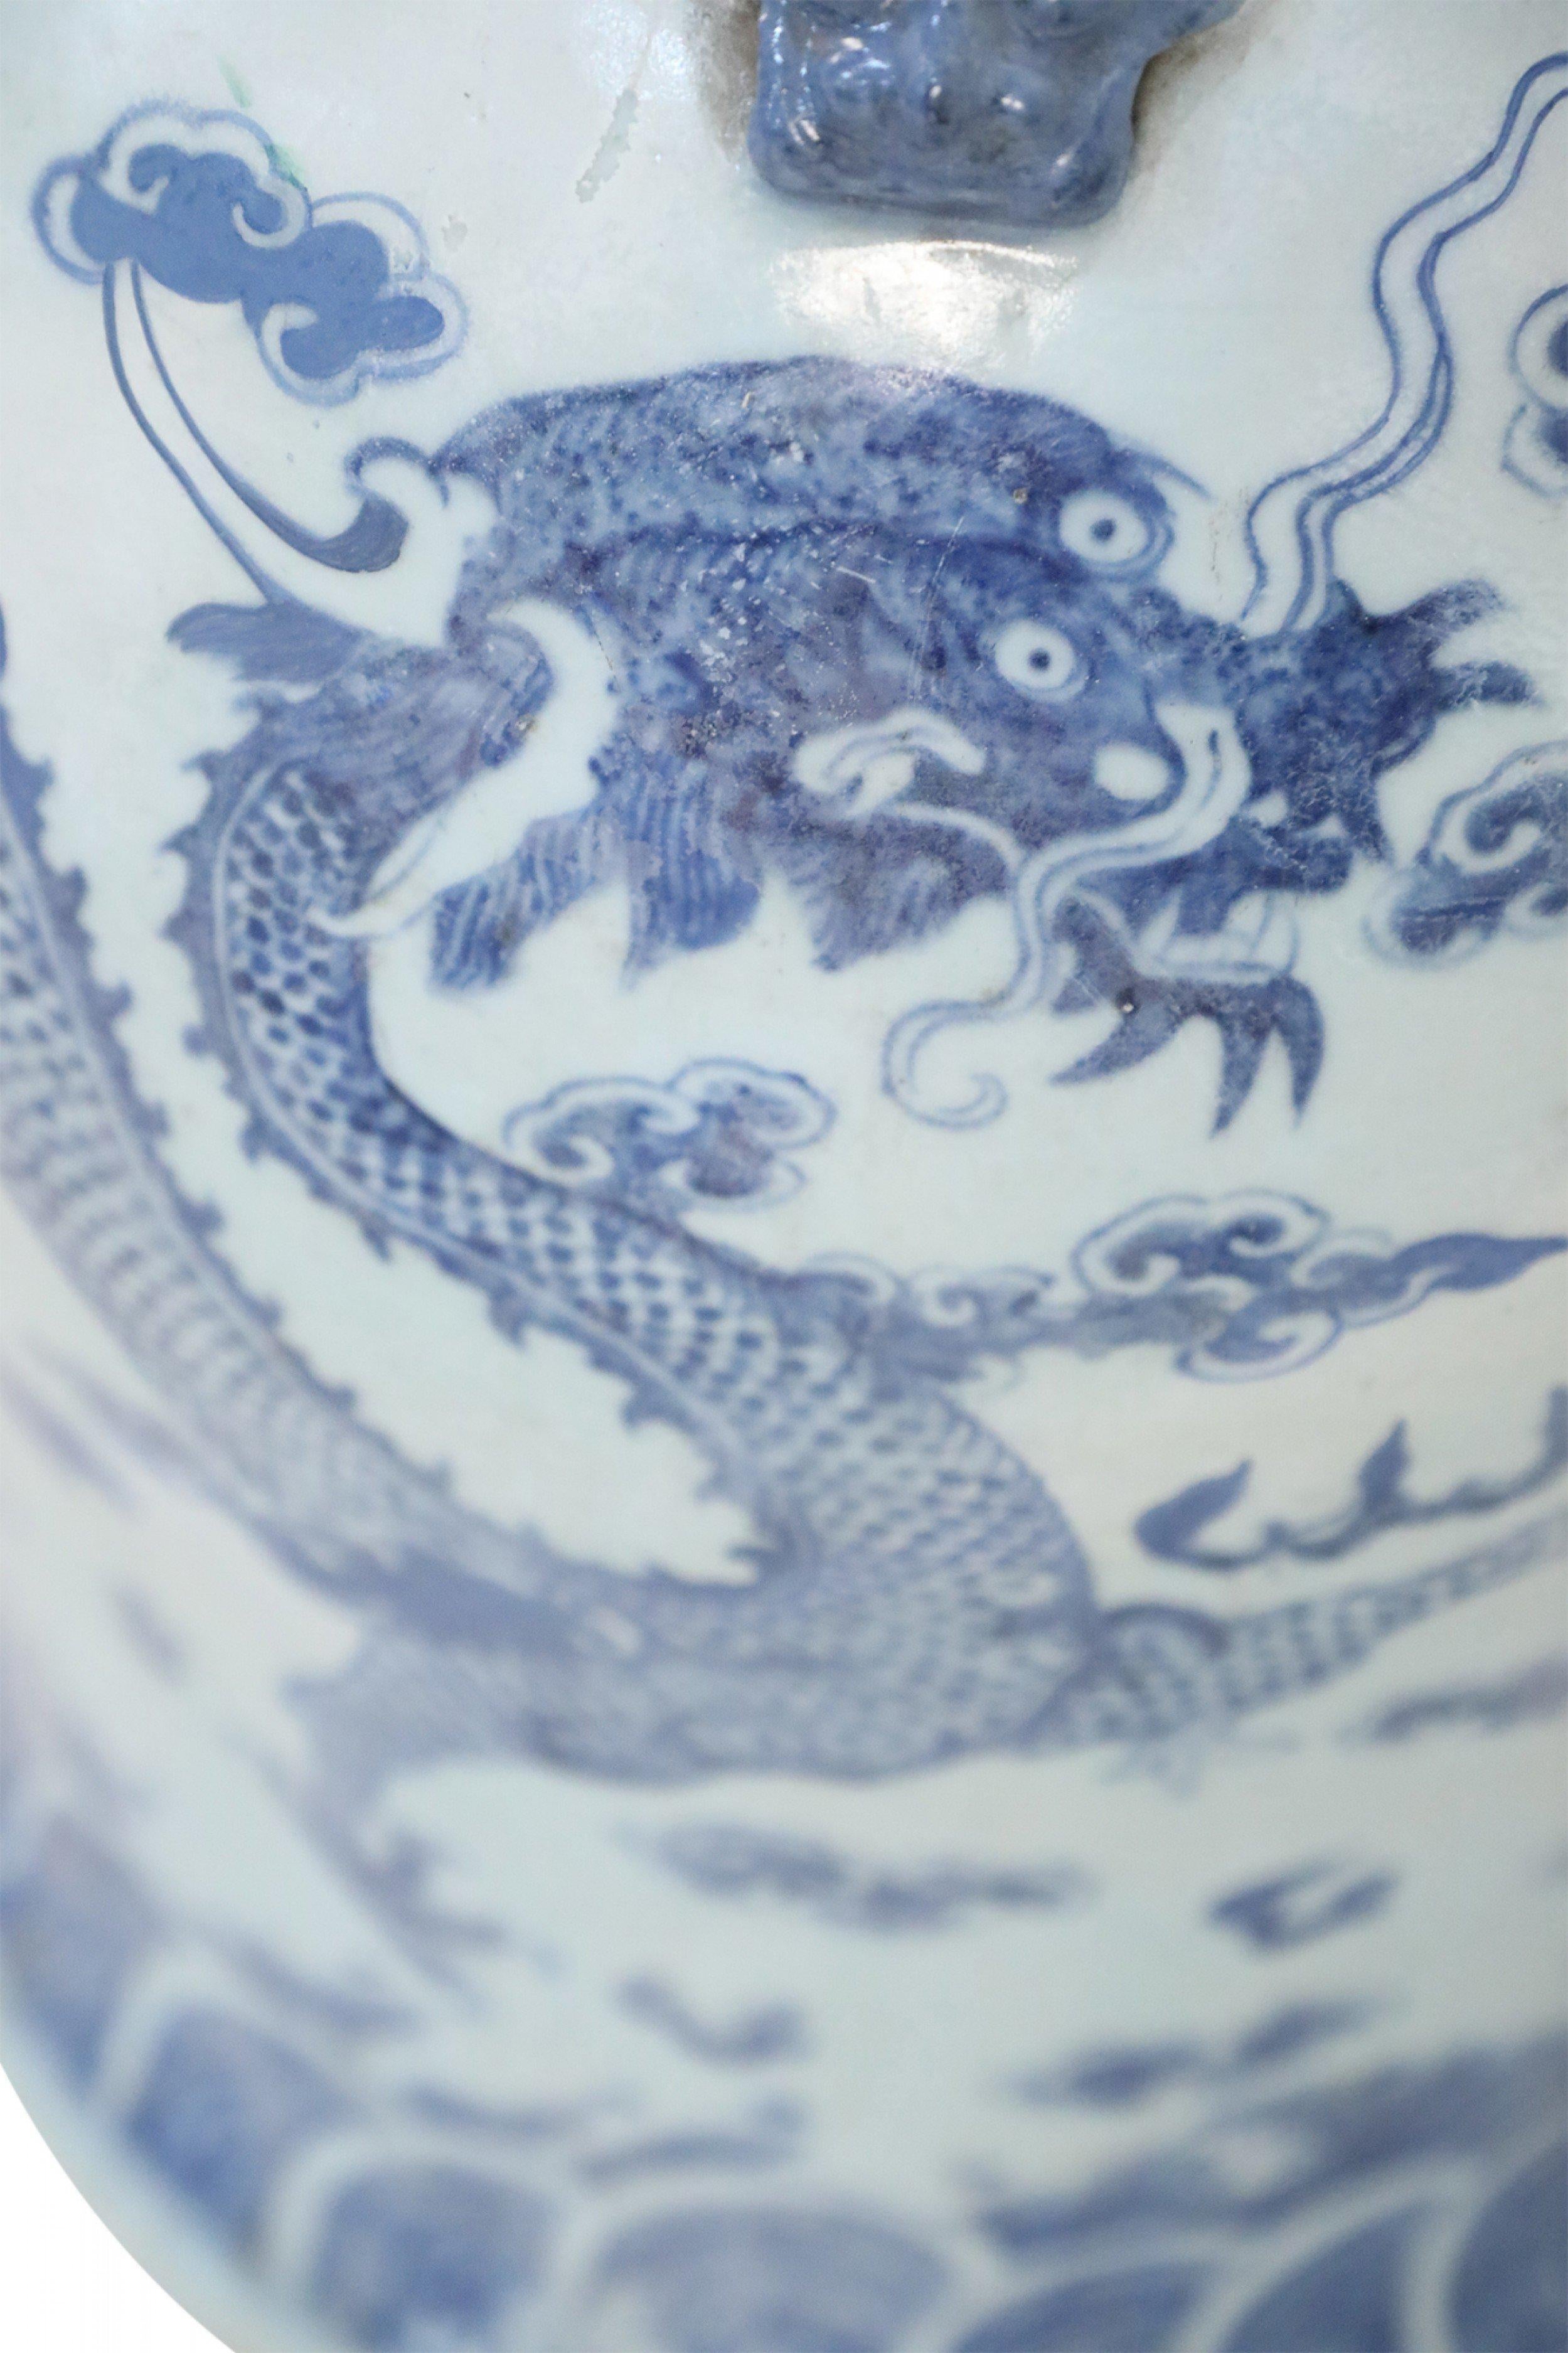 Große chinesische Bodenurne aus weißem Porzellan, verziert mit einem blauen Drachen und Wolkenmotiven und akzentuiert mit Drachenornamenten um die Öffnung.
      